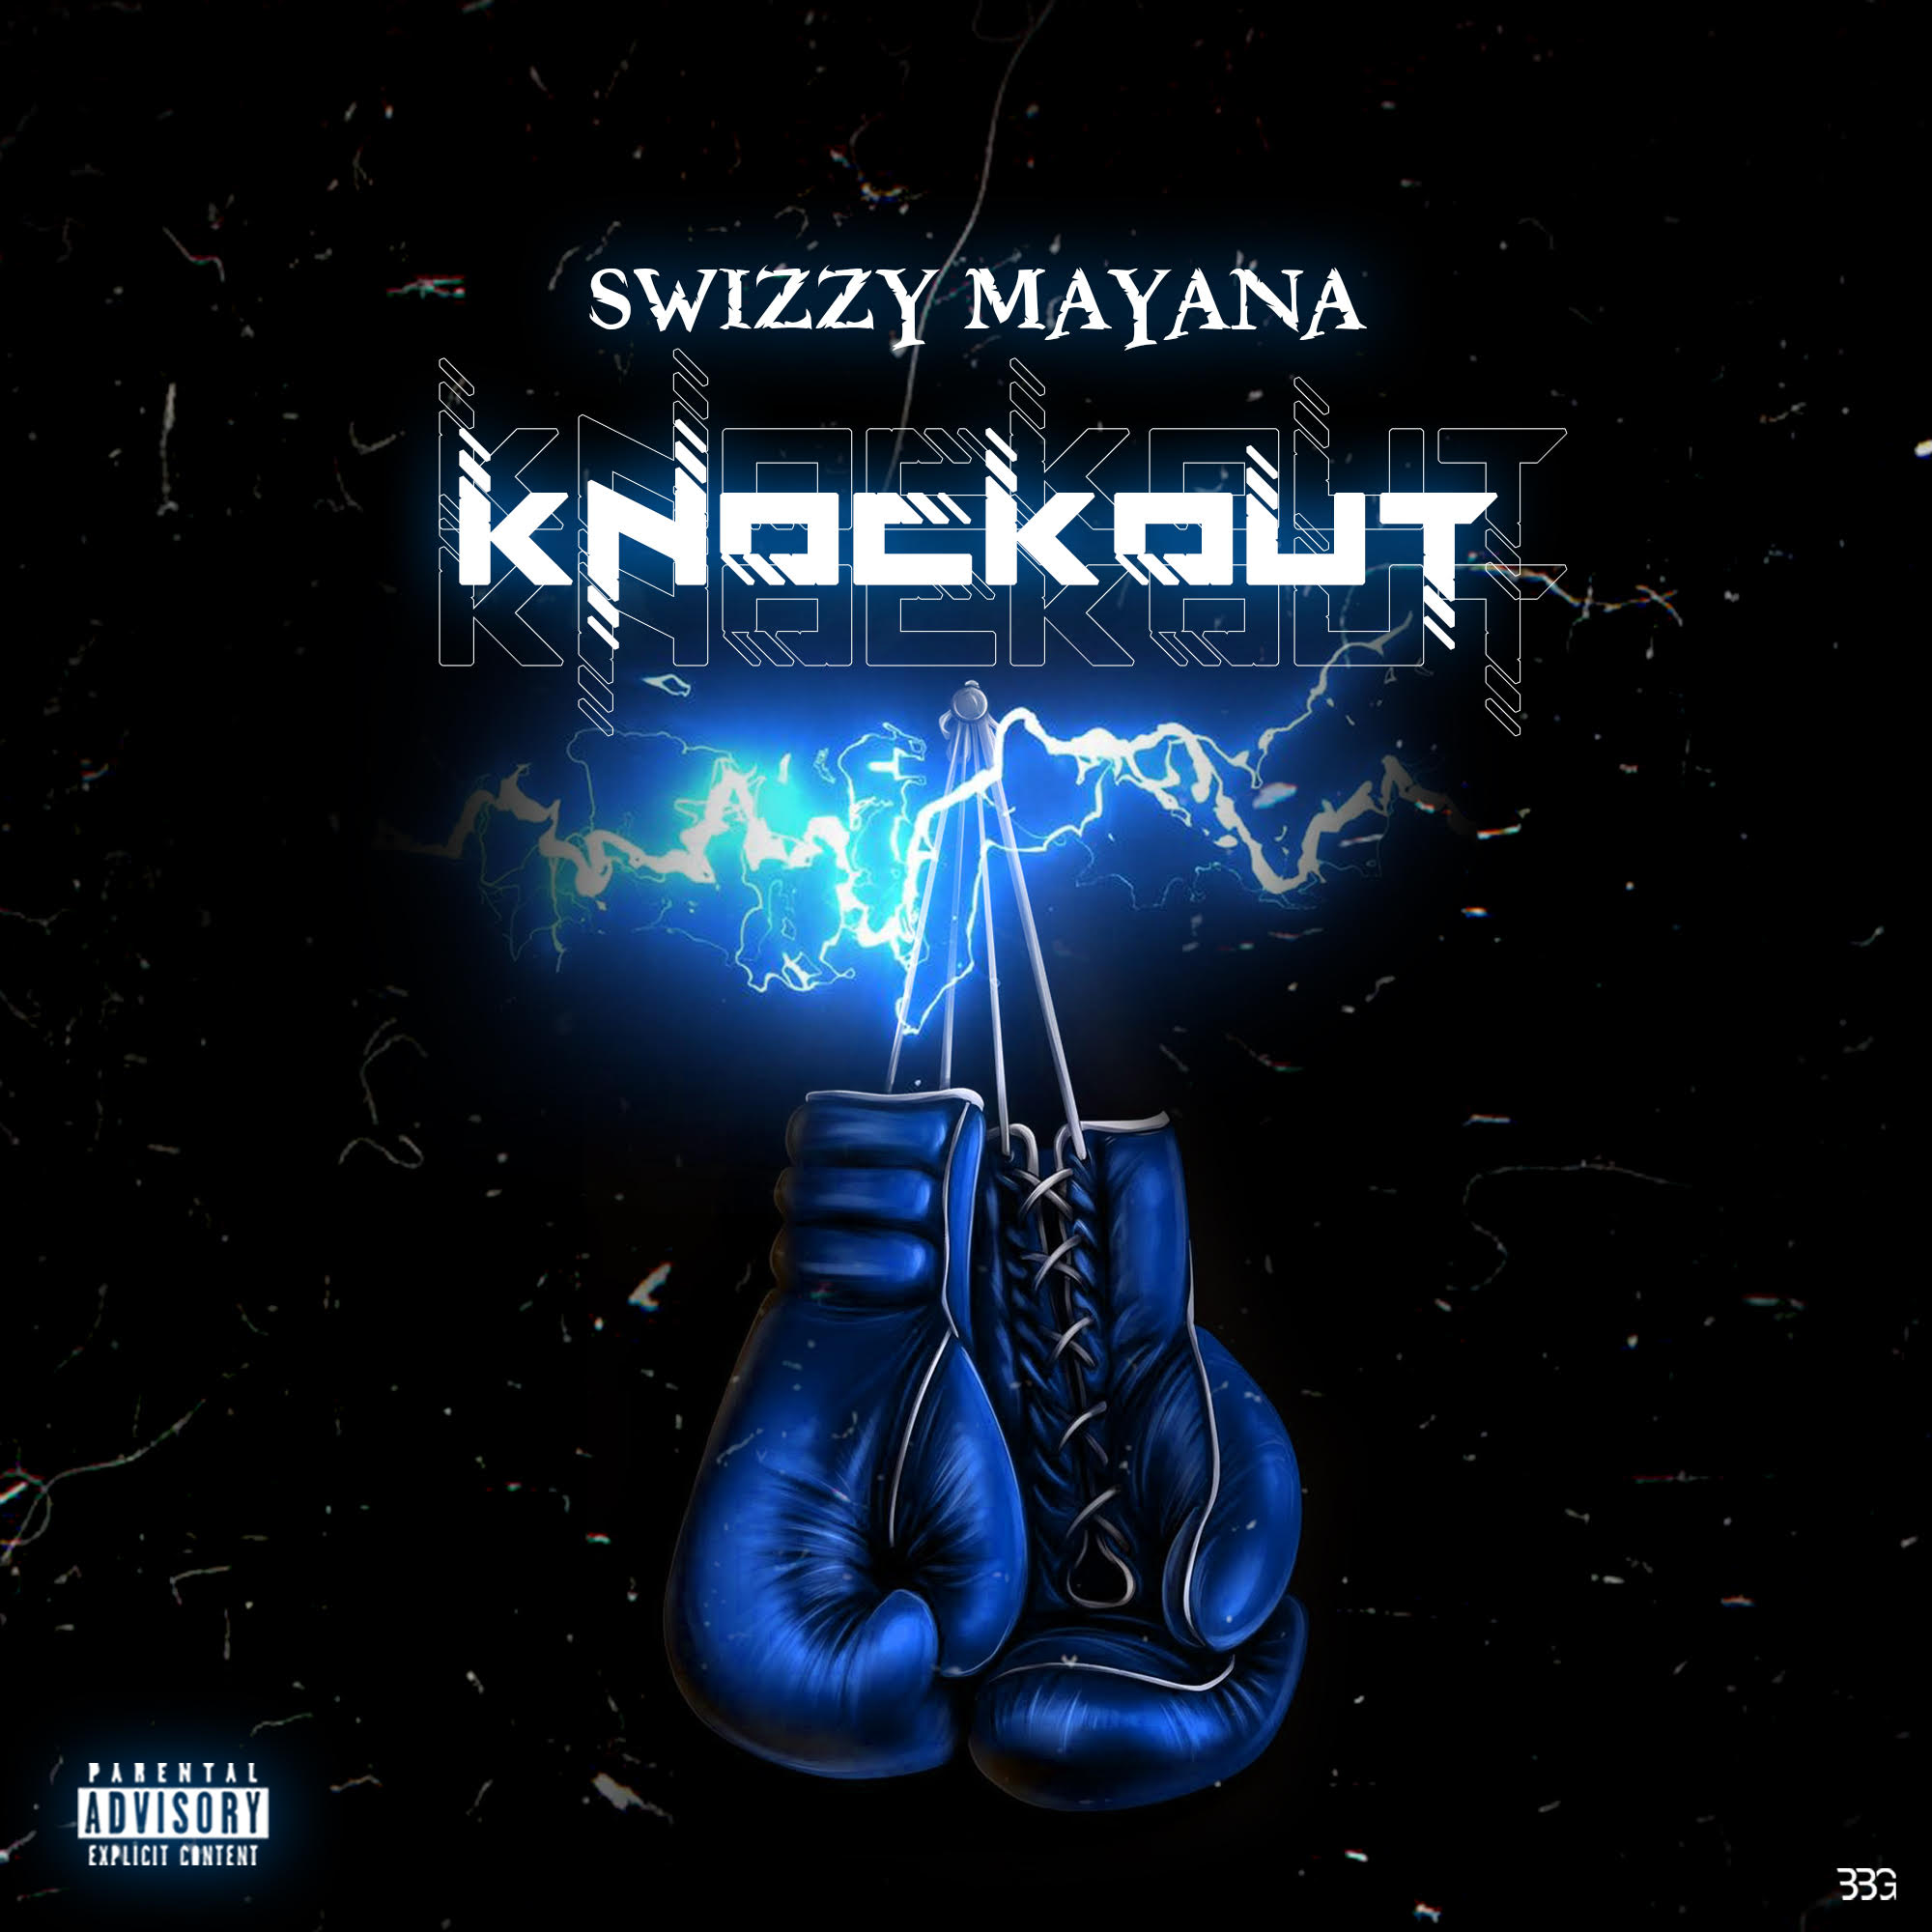 Swizzy Mayana - Knockout